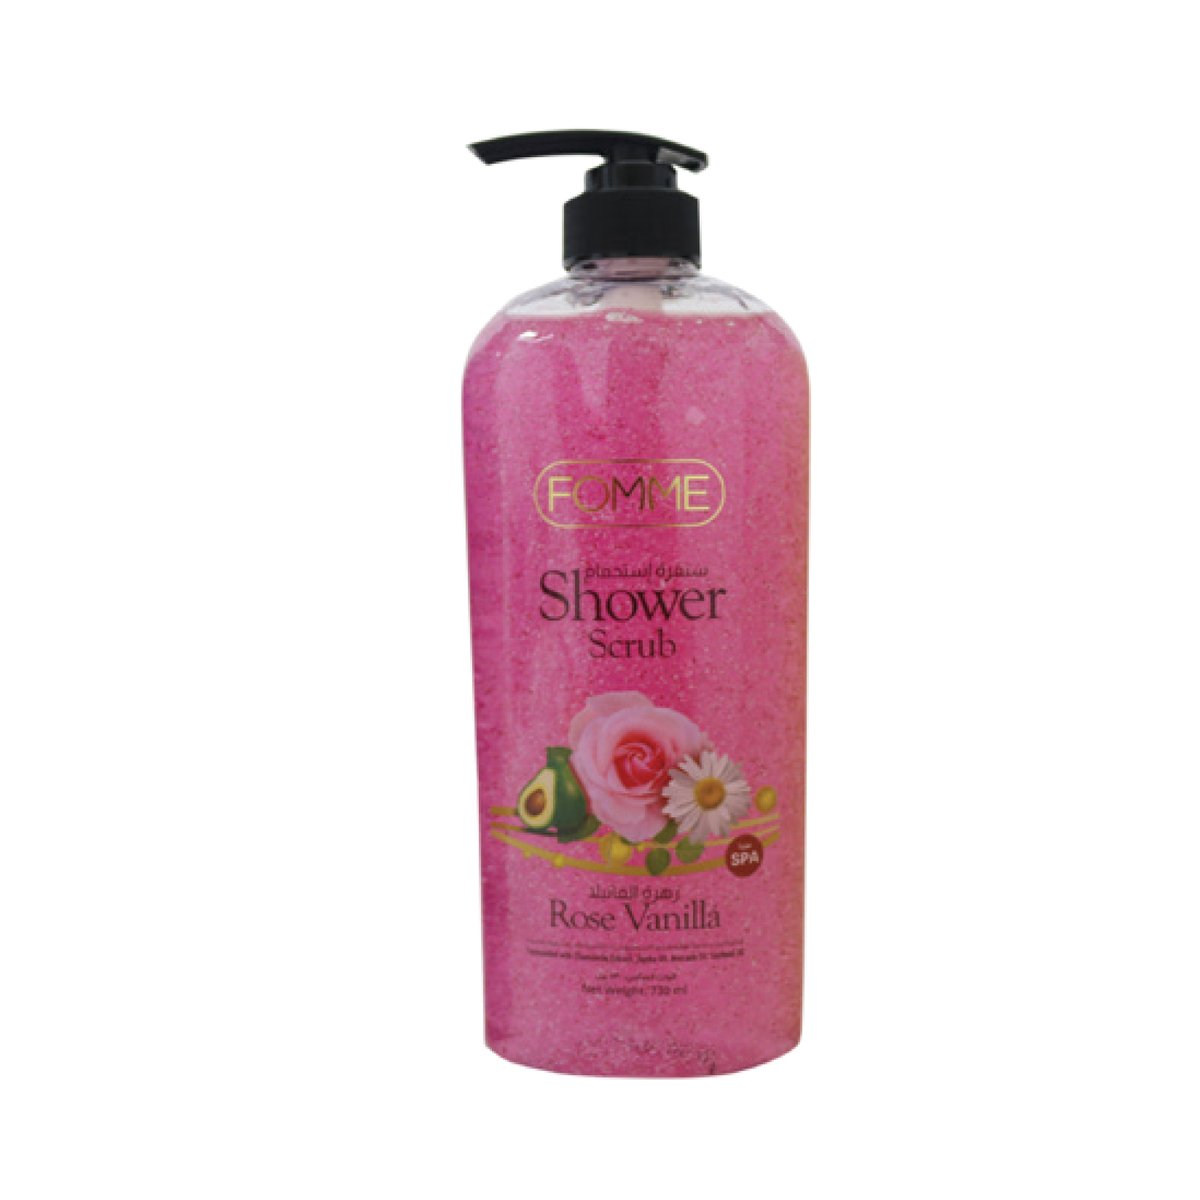 Fomme Shower Gel Scrub Rose Vanilla 730ml